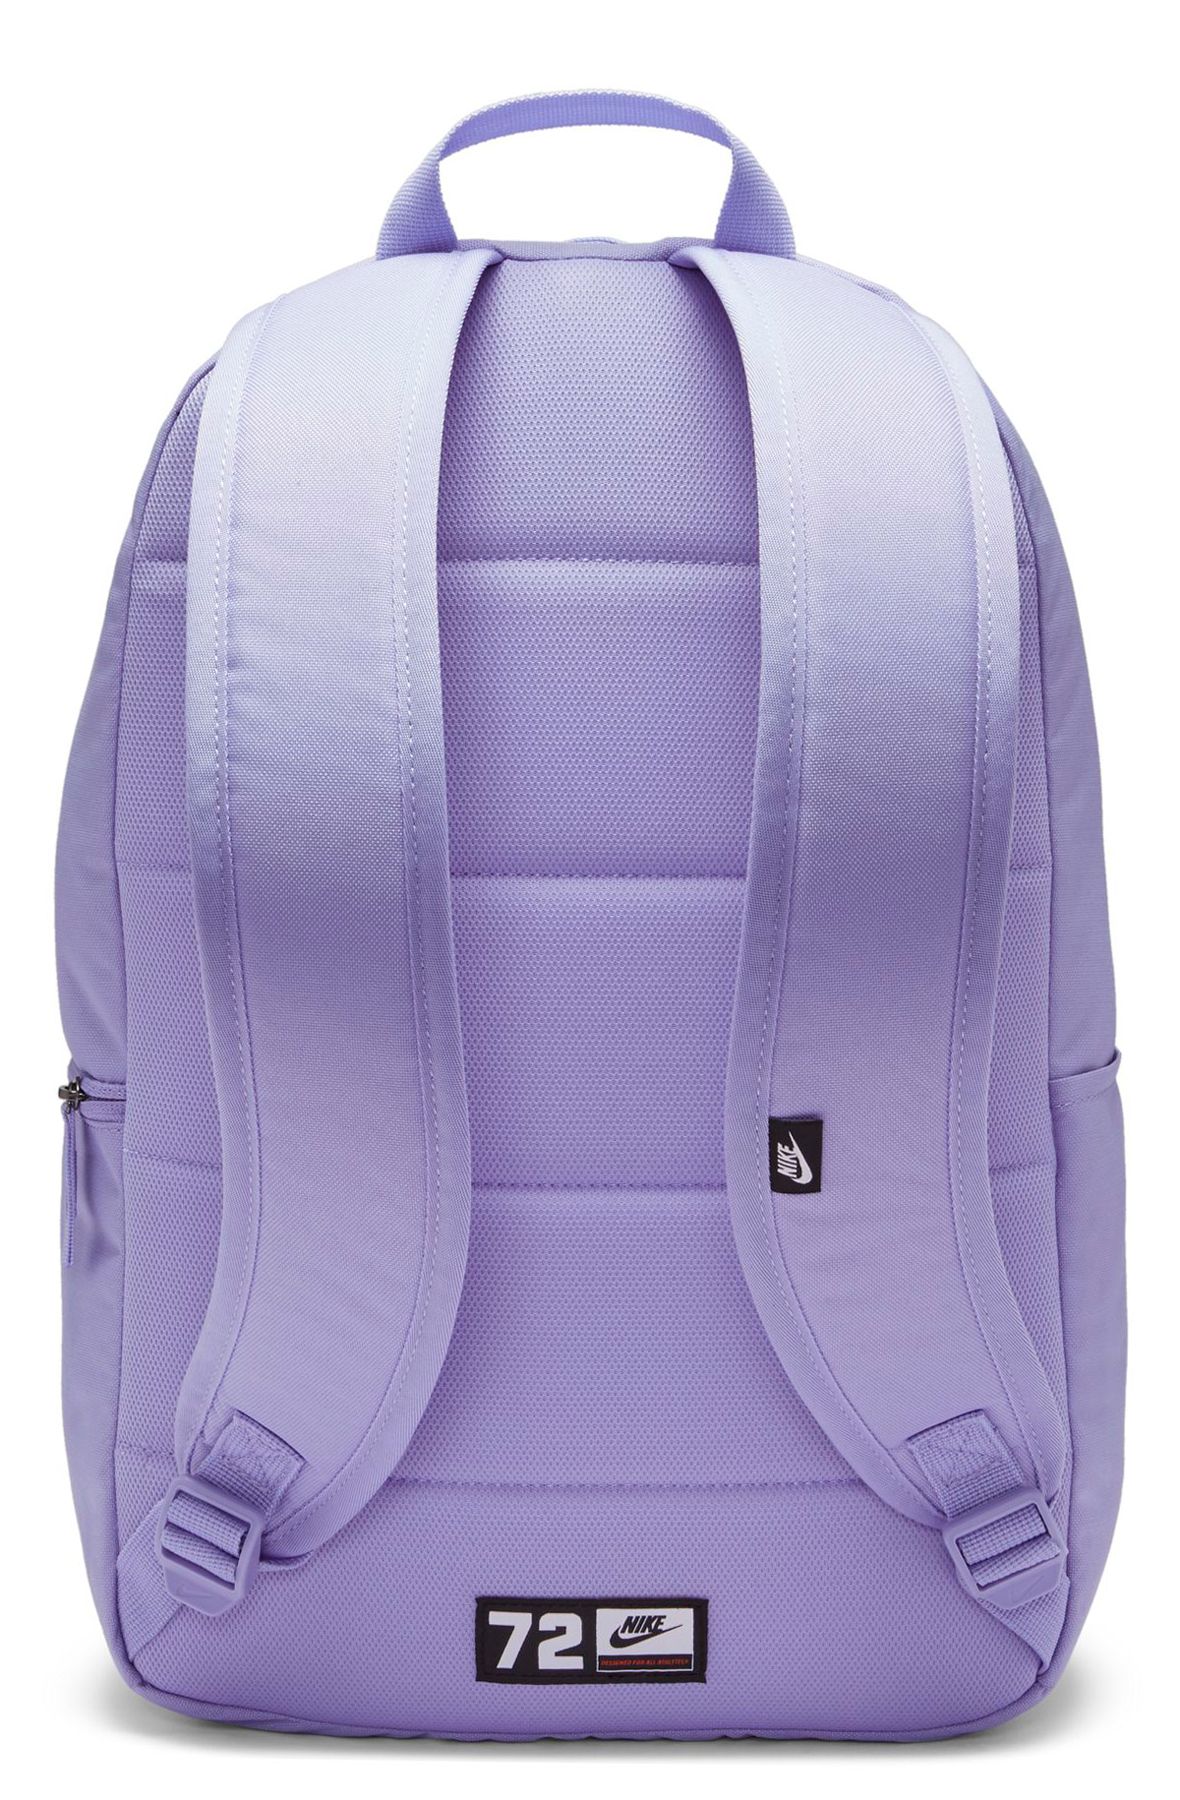 lavender nike backpack